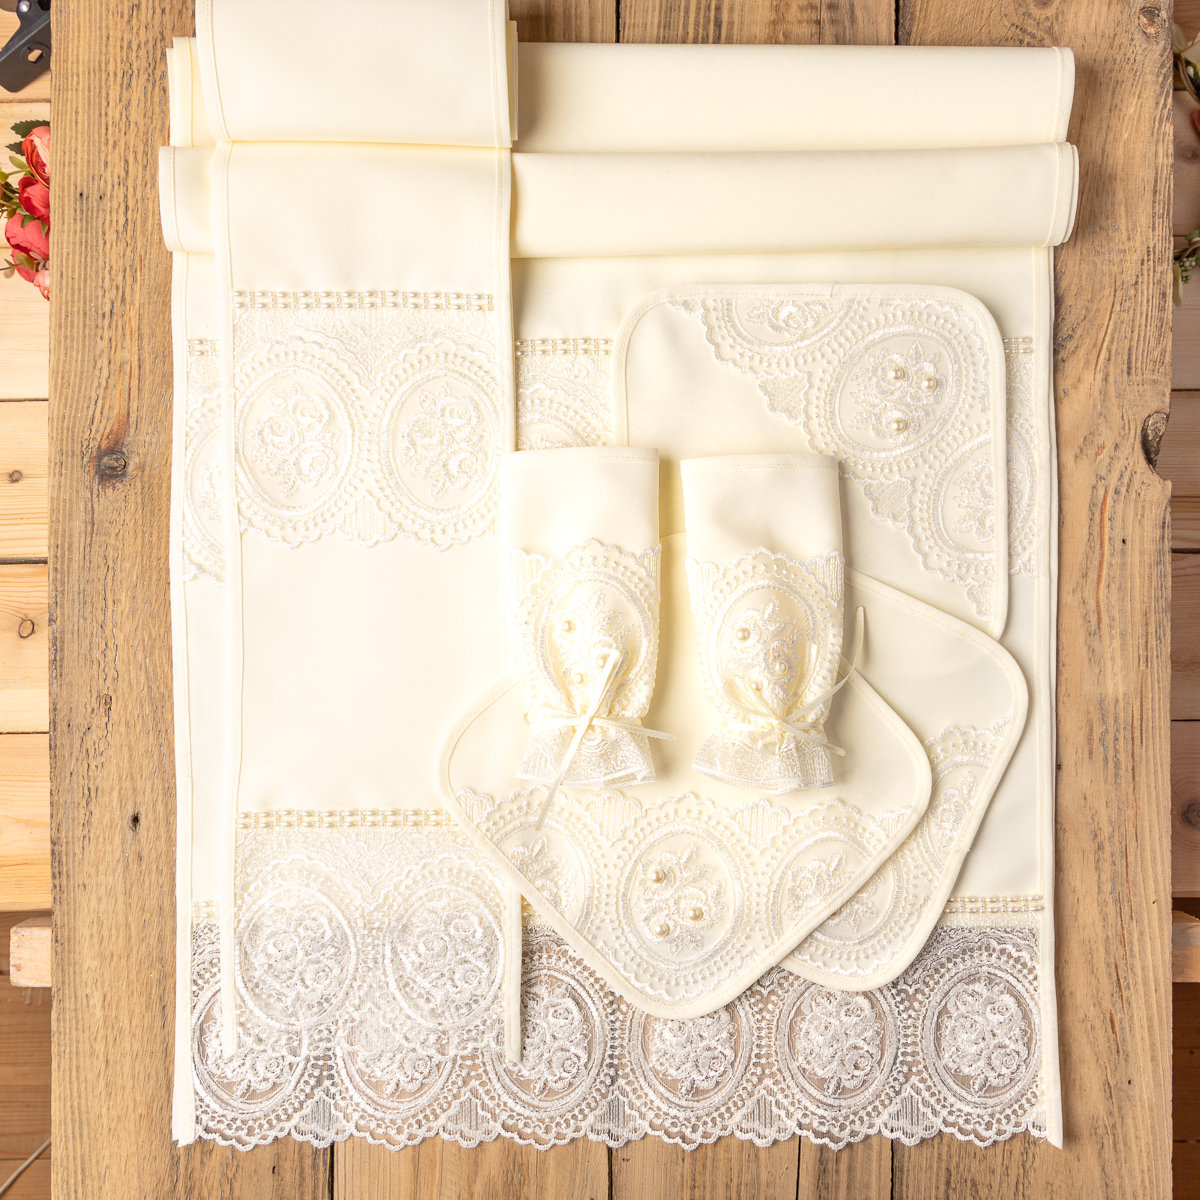 Гардероб Мастер-класс Пасха Шитьё Пасхальный платок для храма МК Кружево Ленты